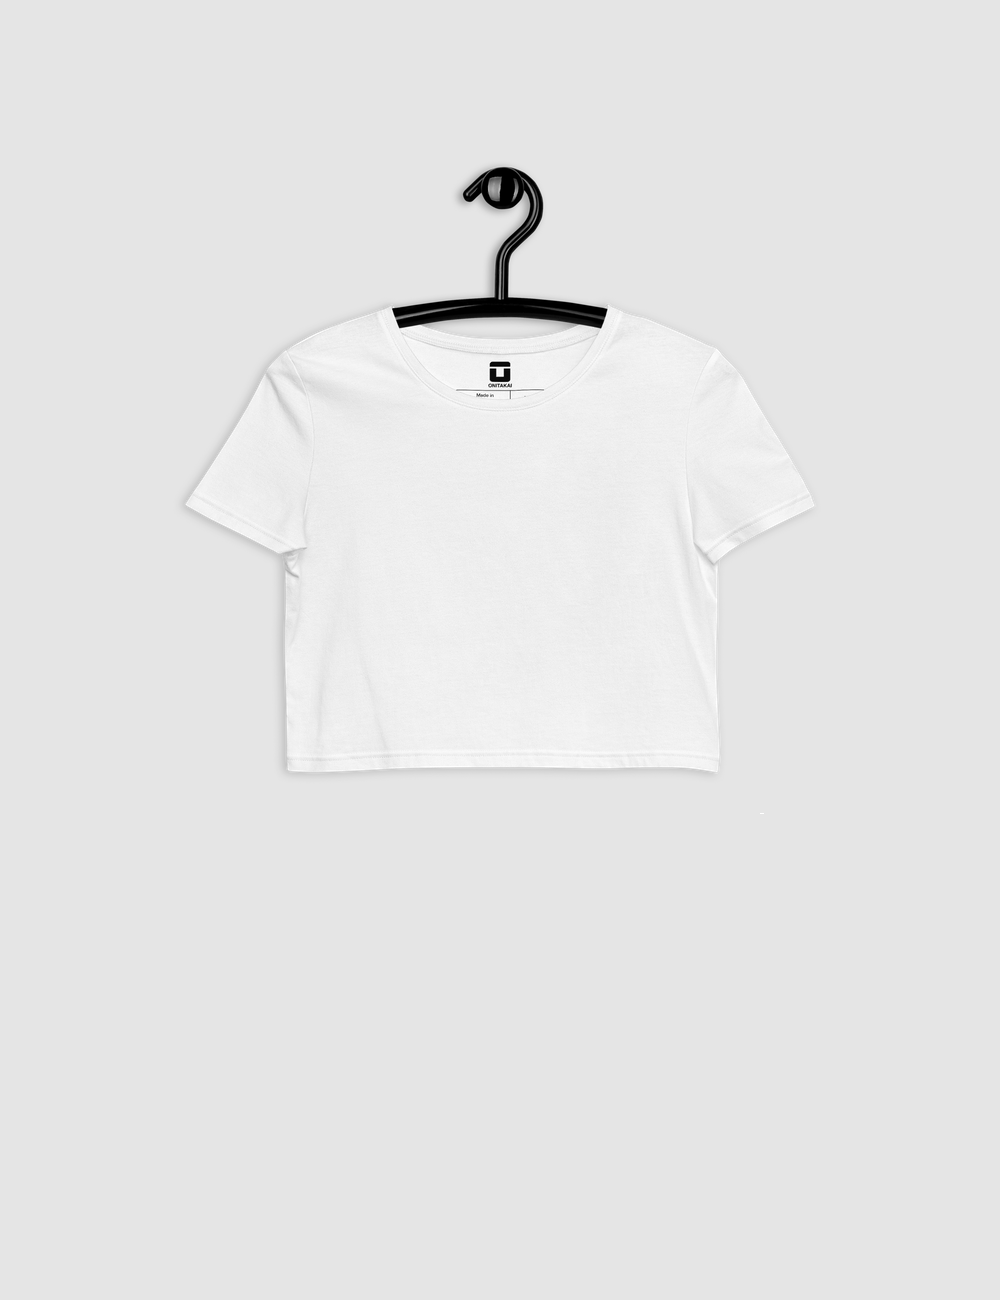 Classic White | Women's Crop Top T-Shirt OniTakai